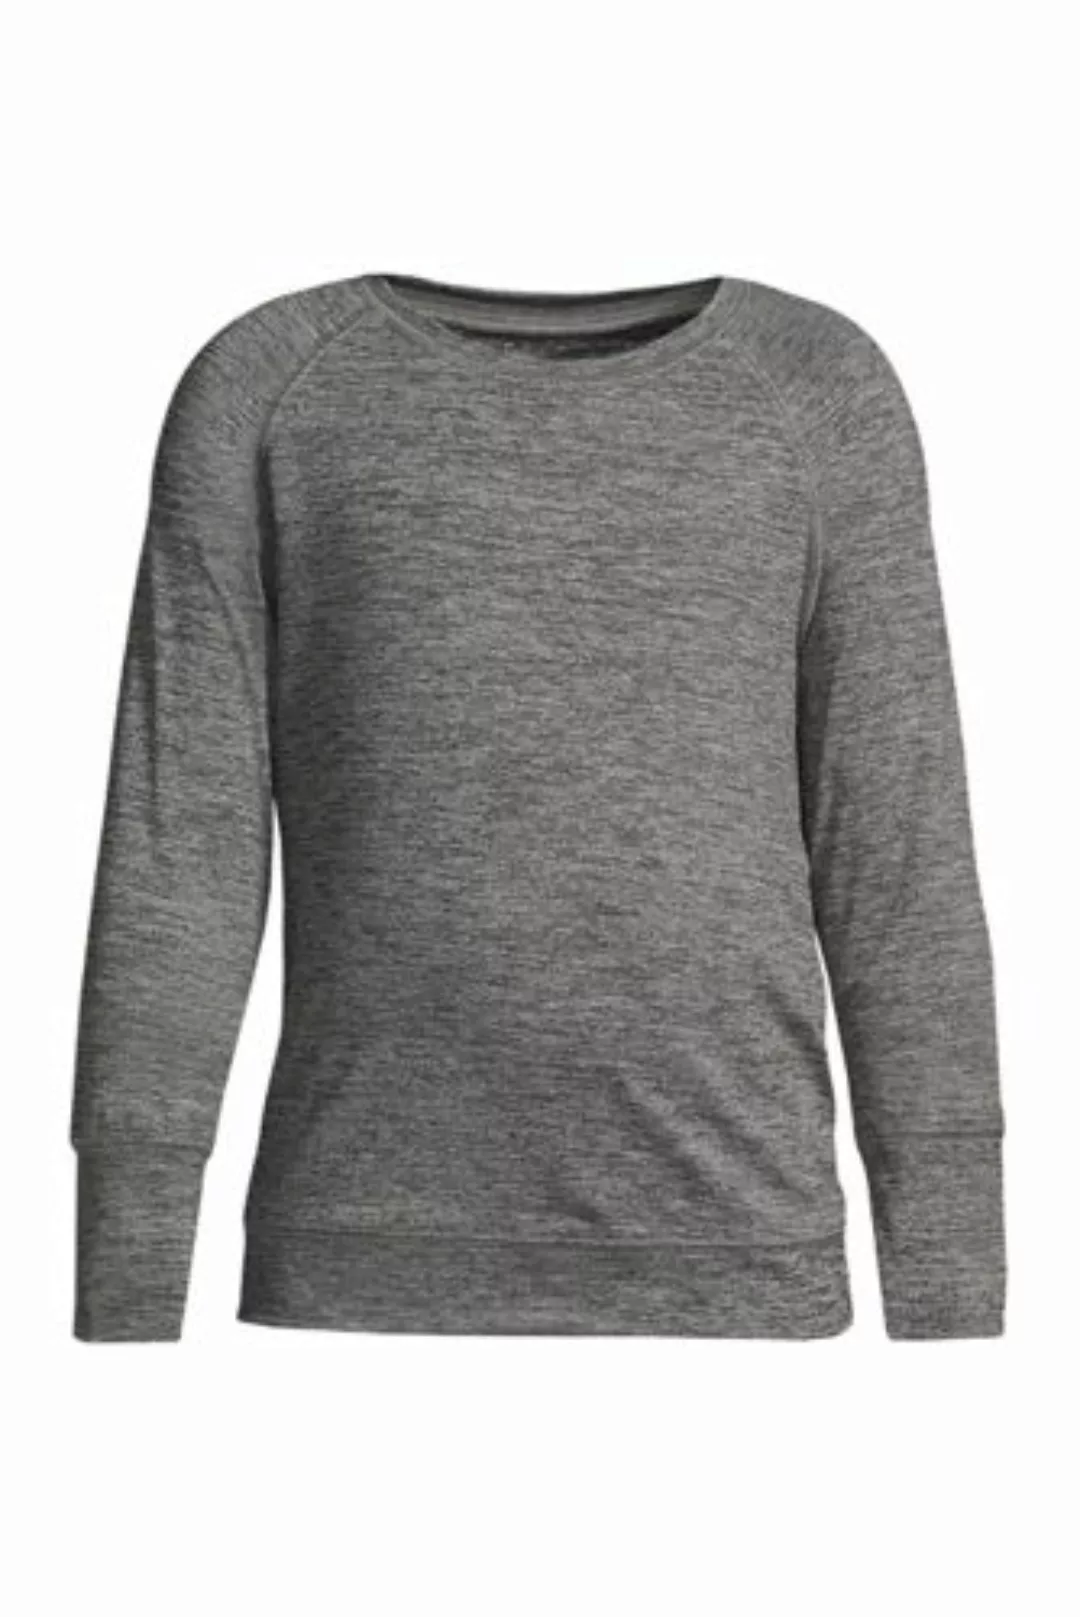 Active-Langarm-Shirt, Größe: 152-158, Schwarz, Elasthan, by Lands' End, Sch günstig online kaufen